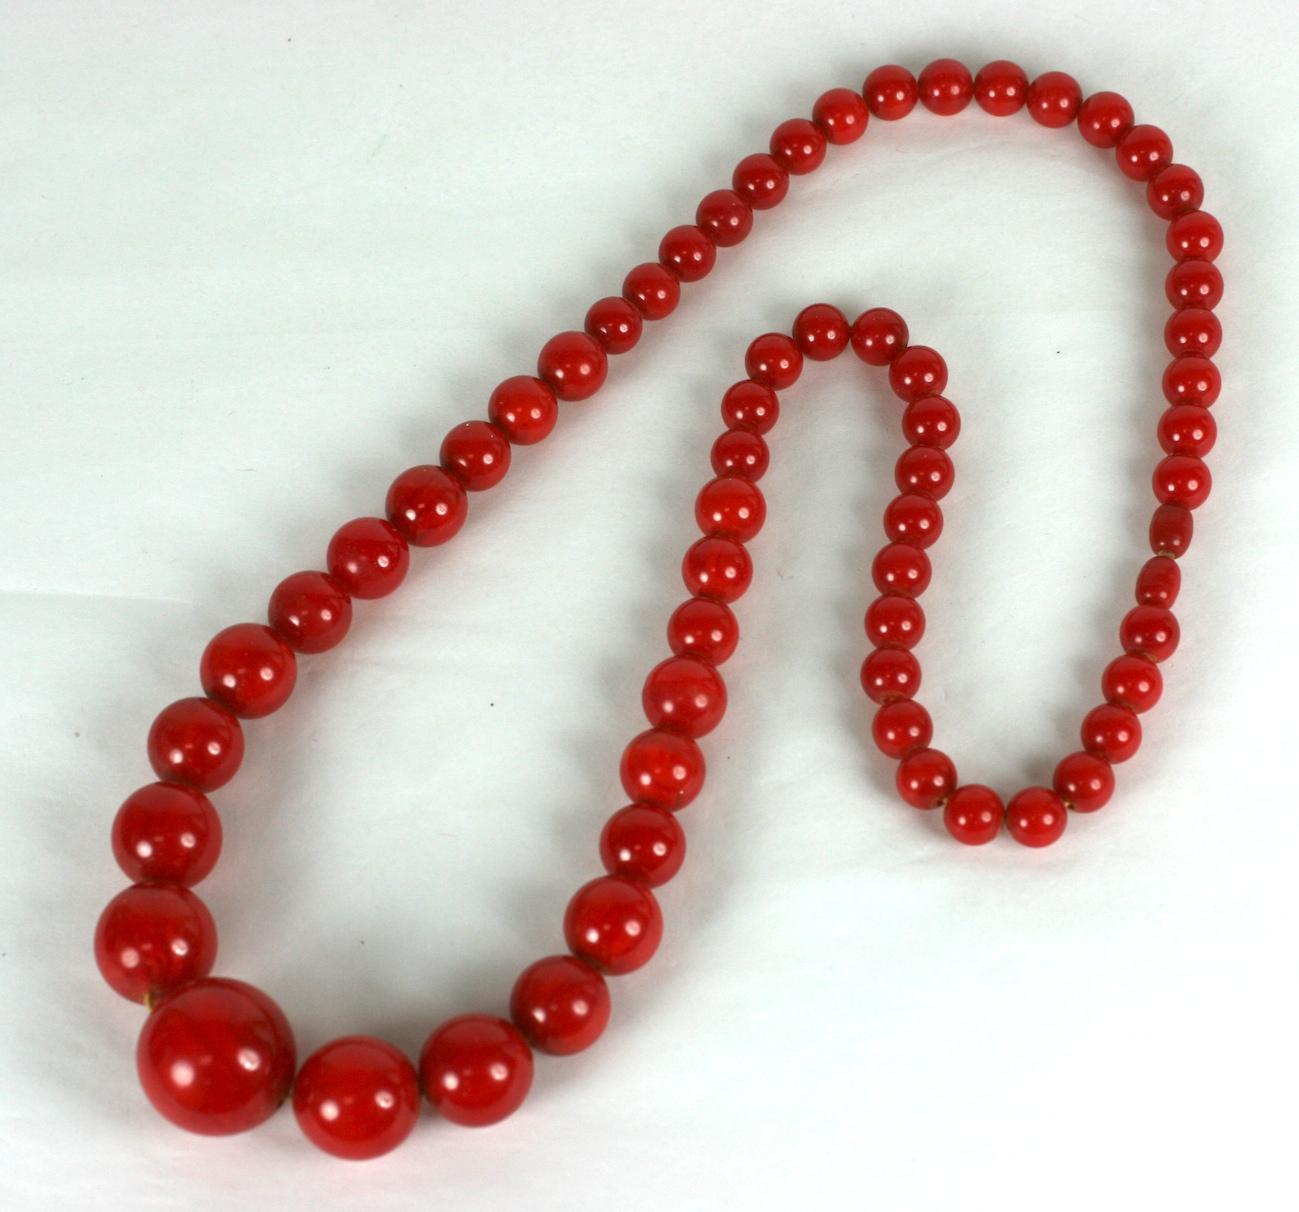 Art Deco Bakelit Perlen und Armband Set aus den 1930er Jahren. Die Halskette hat abgestufte Perlen mit einem einfachen, versteckten Drehverschluß. Das Armband ist mit 2 Strängen verdrahtet und mit Kristallrondellen verziert.
Es handelt sich um ein